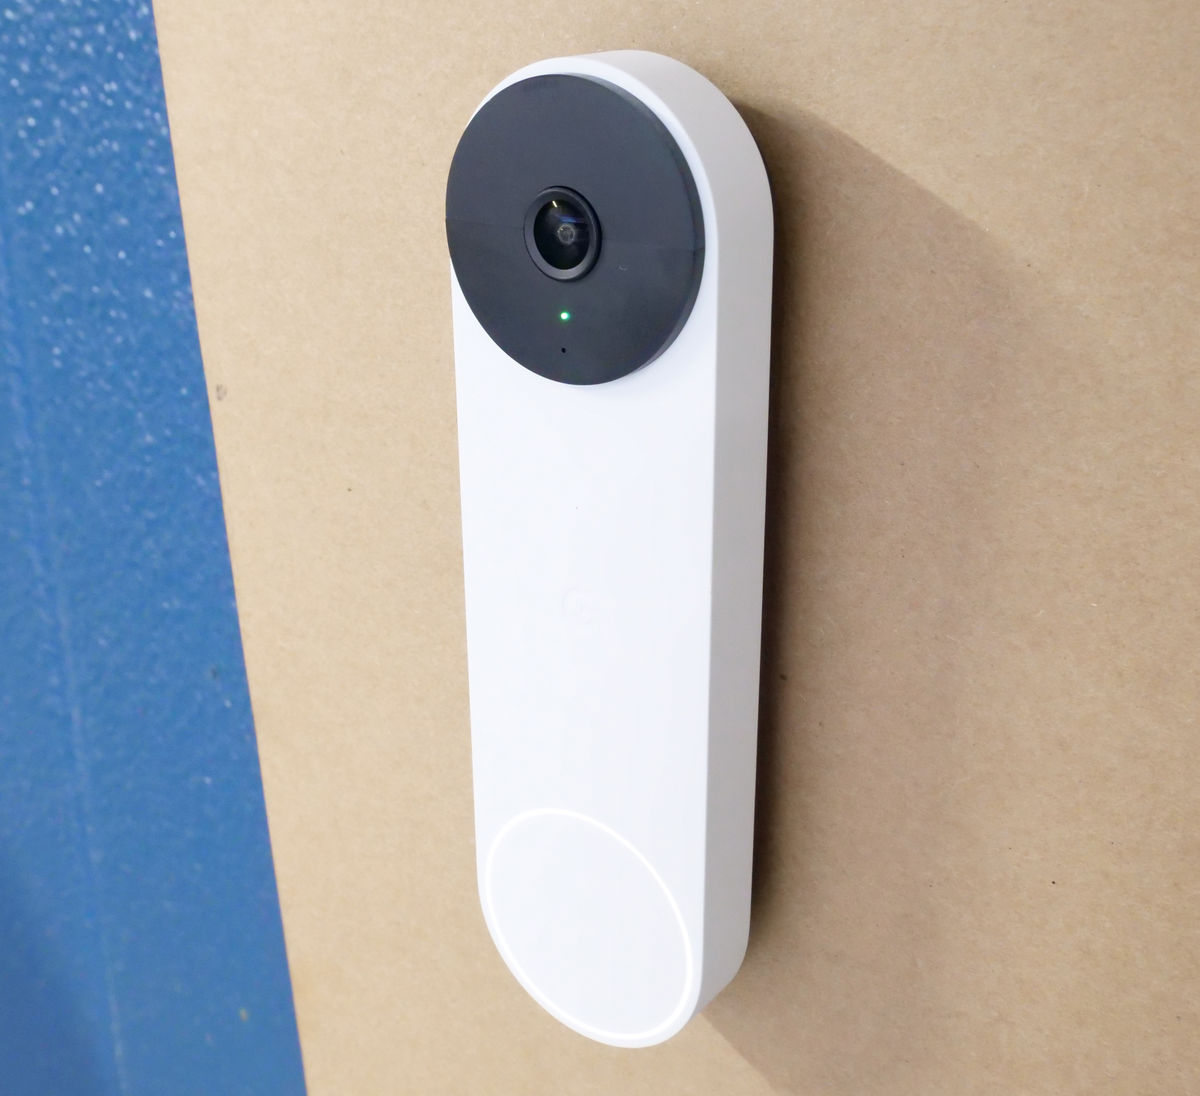 Googleのスマートドアベル「Google Nest Doorbell」使用レビュー、置き 